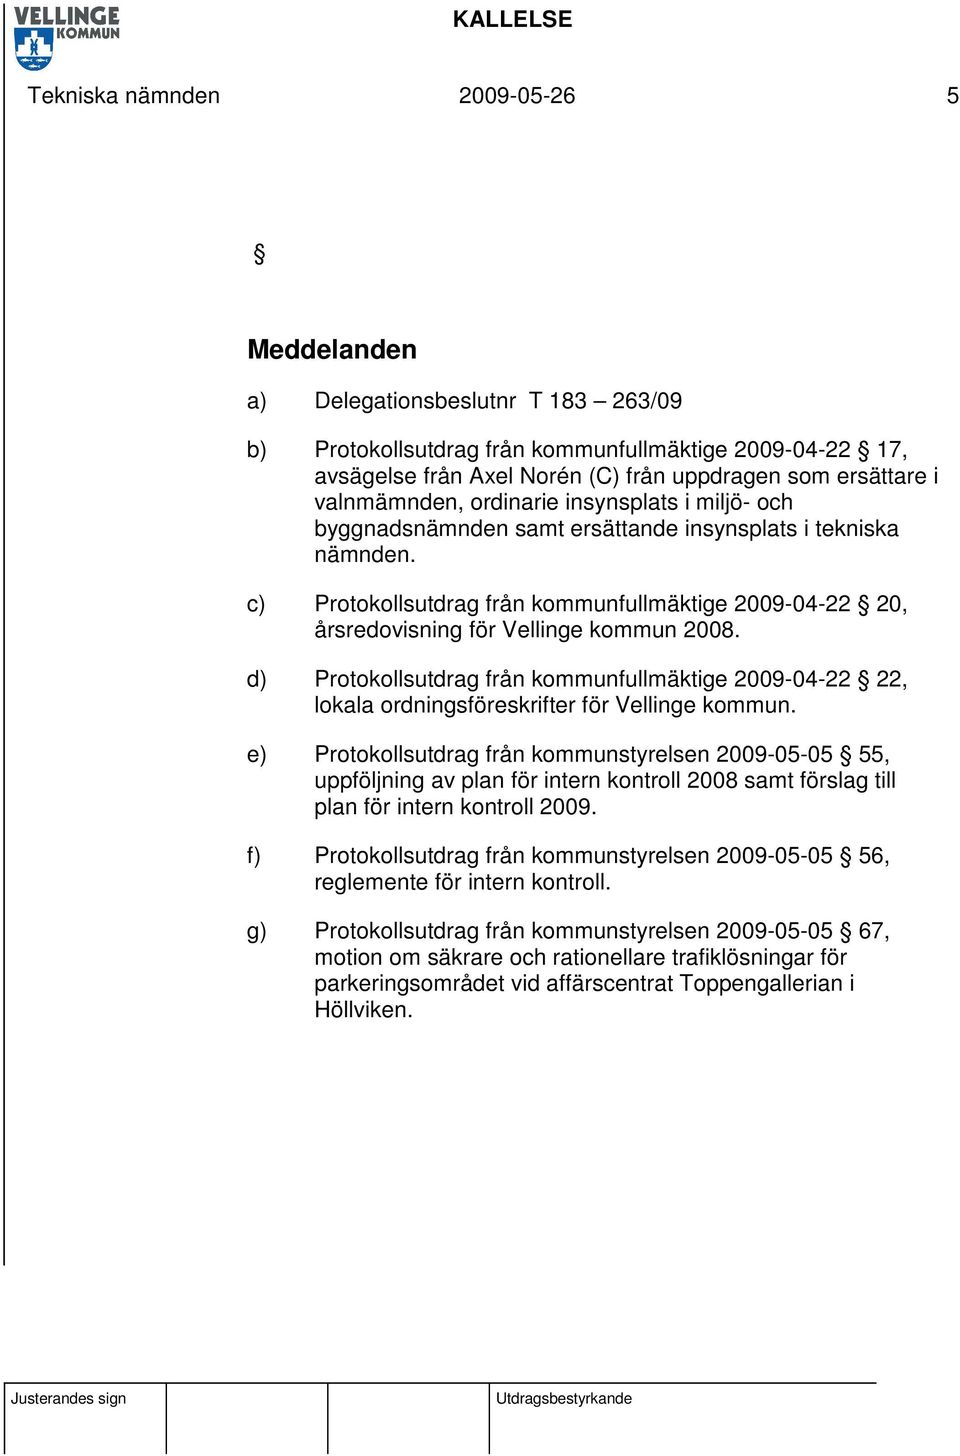 c) Protokollsutdrag från kommunfullmäktige 2009-04-22 20, årsredovisning för Vellinge kommun 2008.